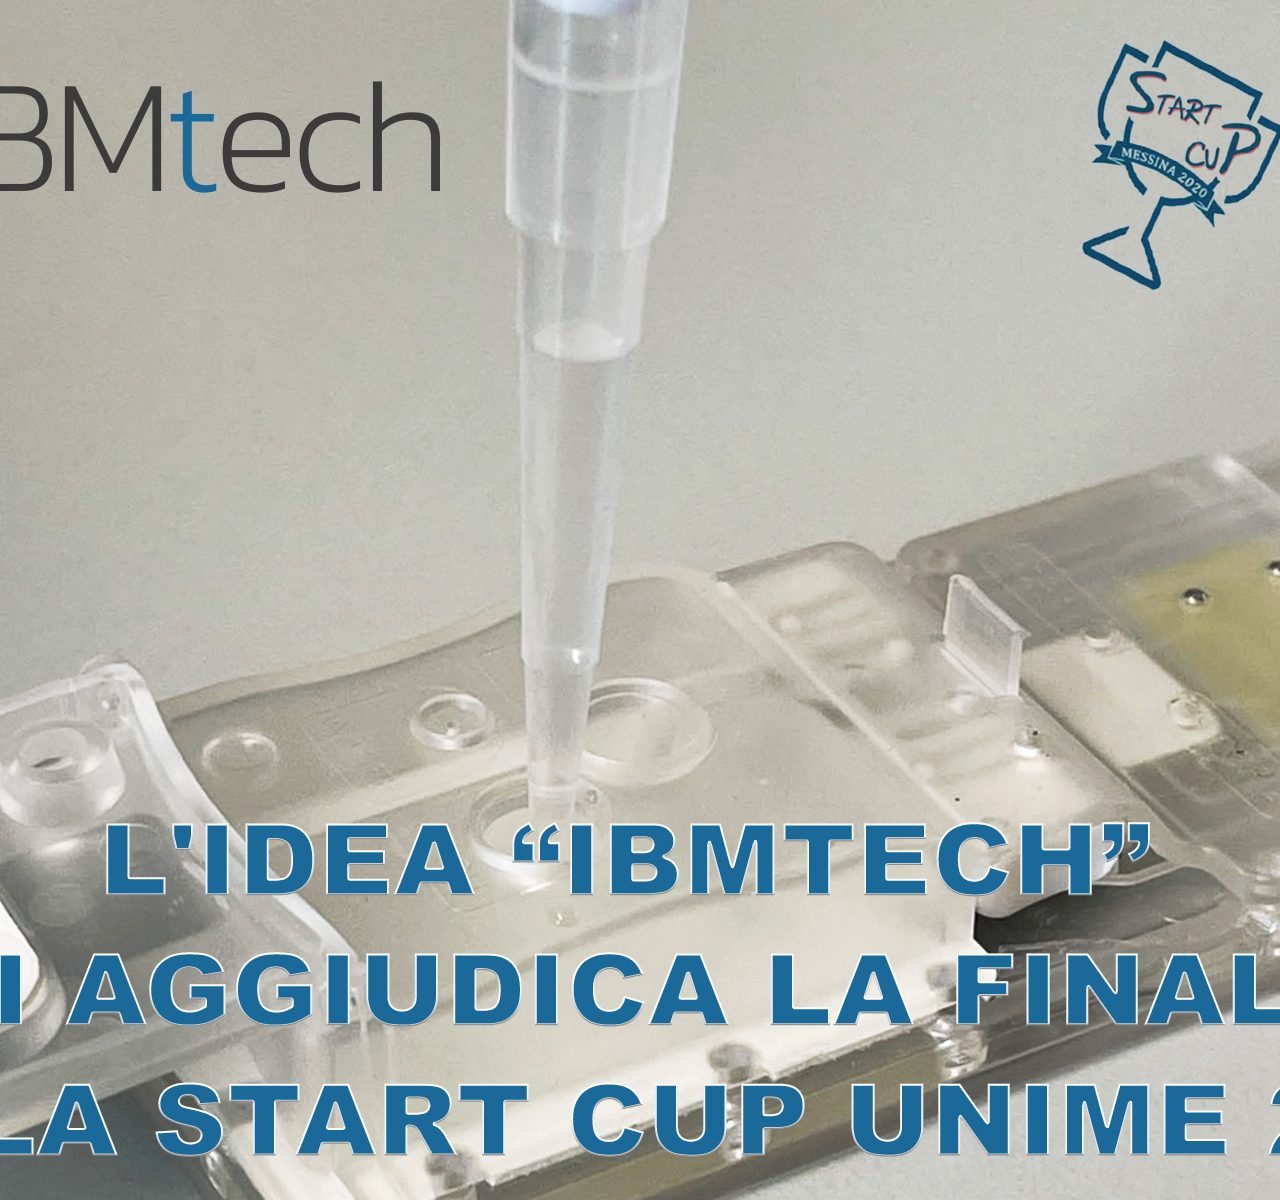 IBMtech si aggiudica la START CUP UniME 2020